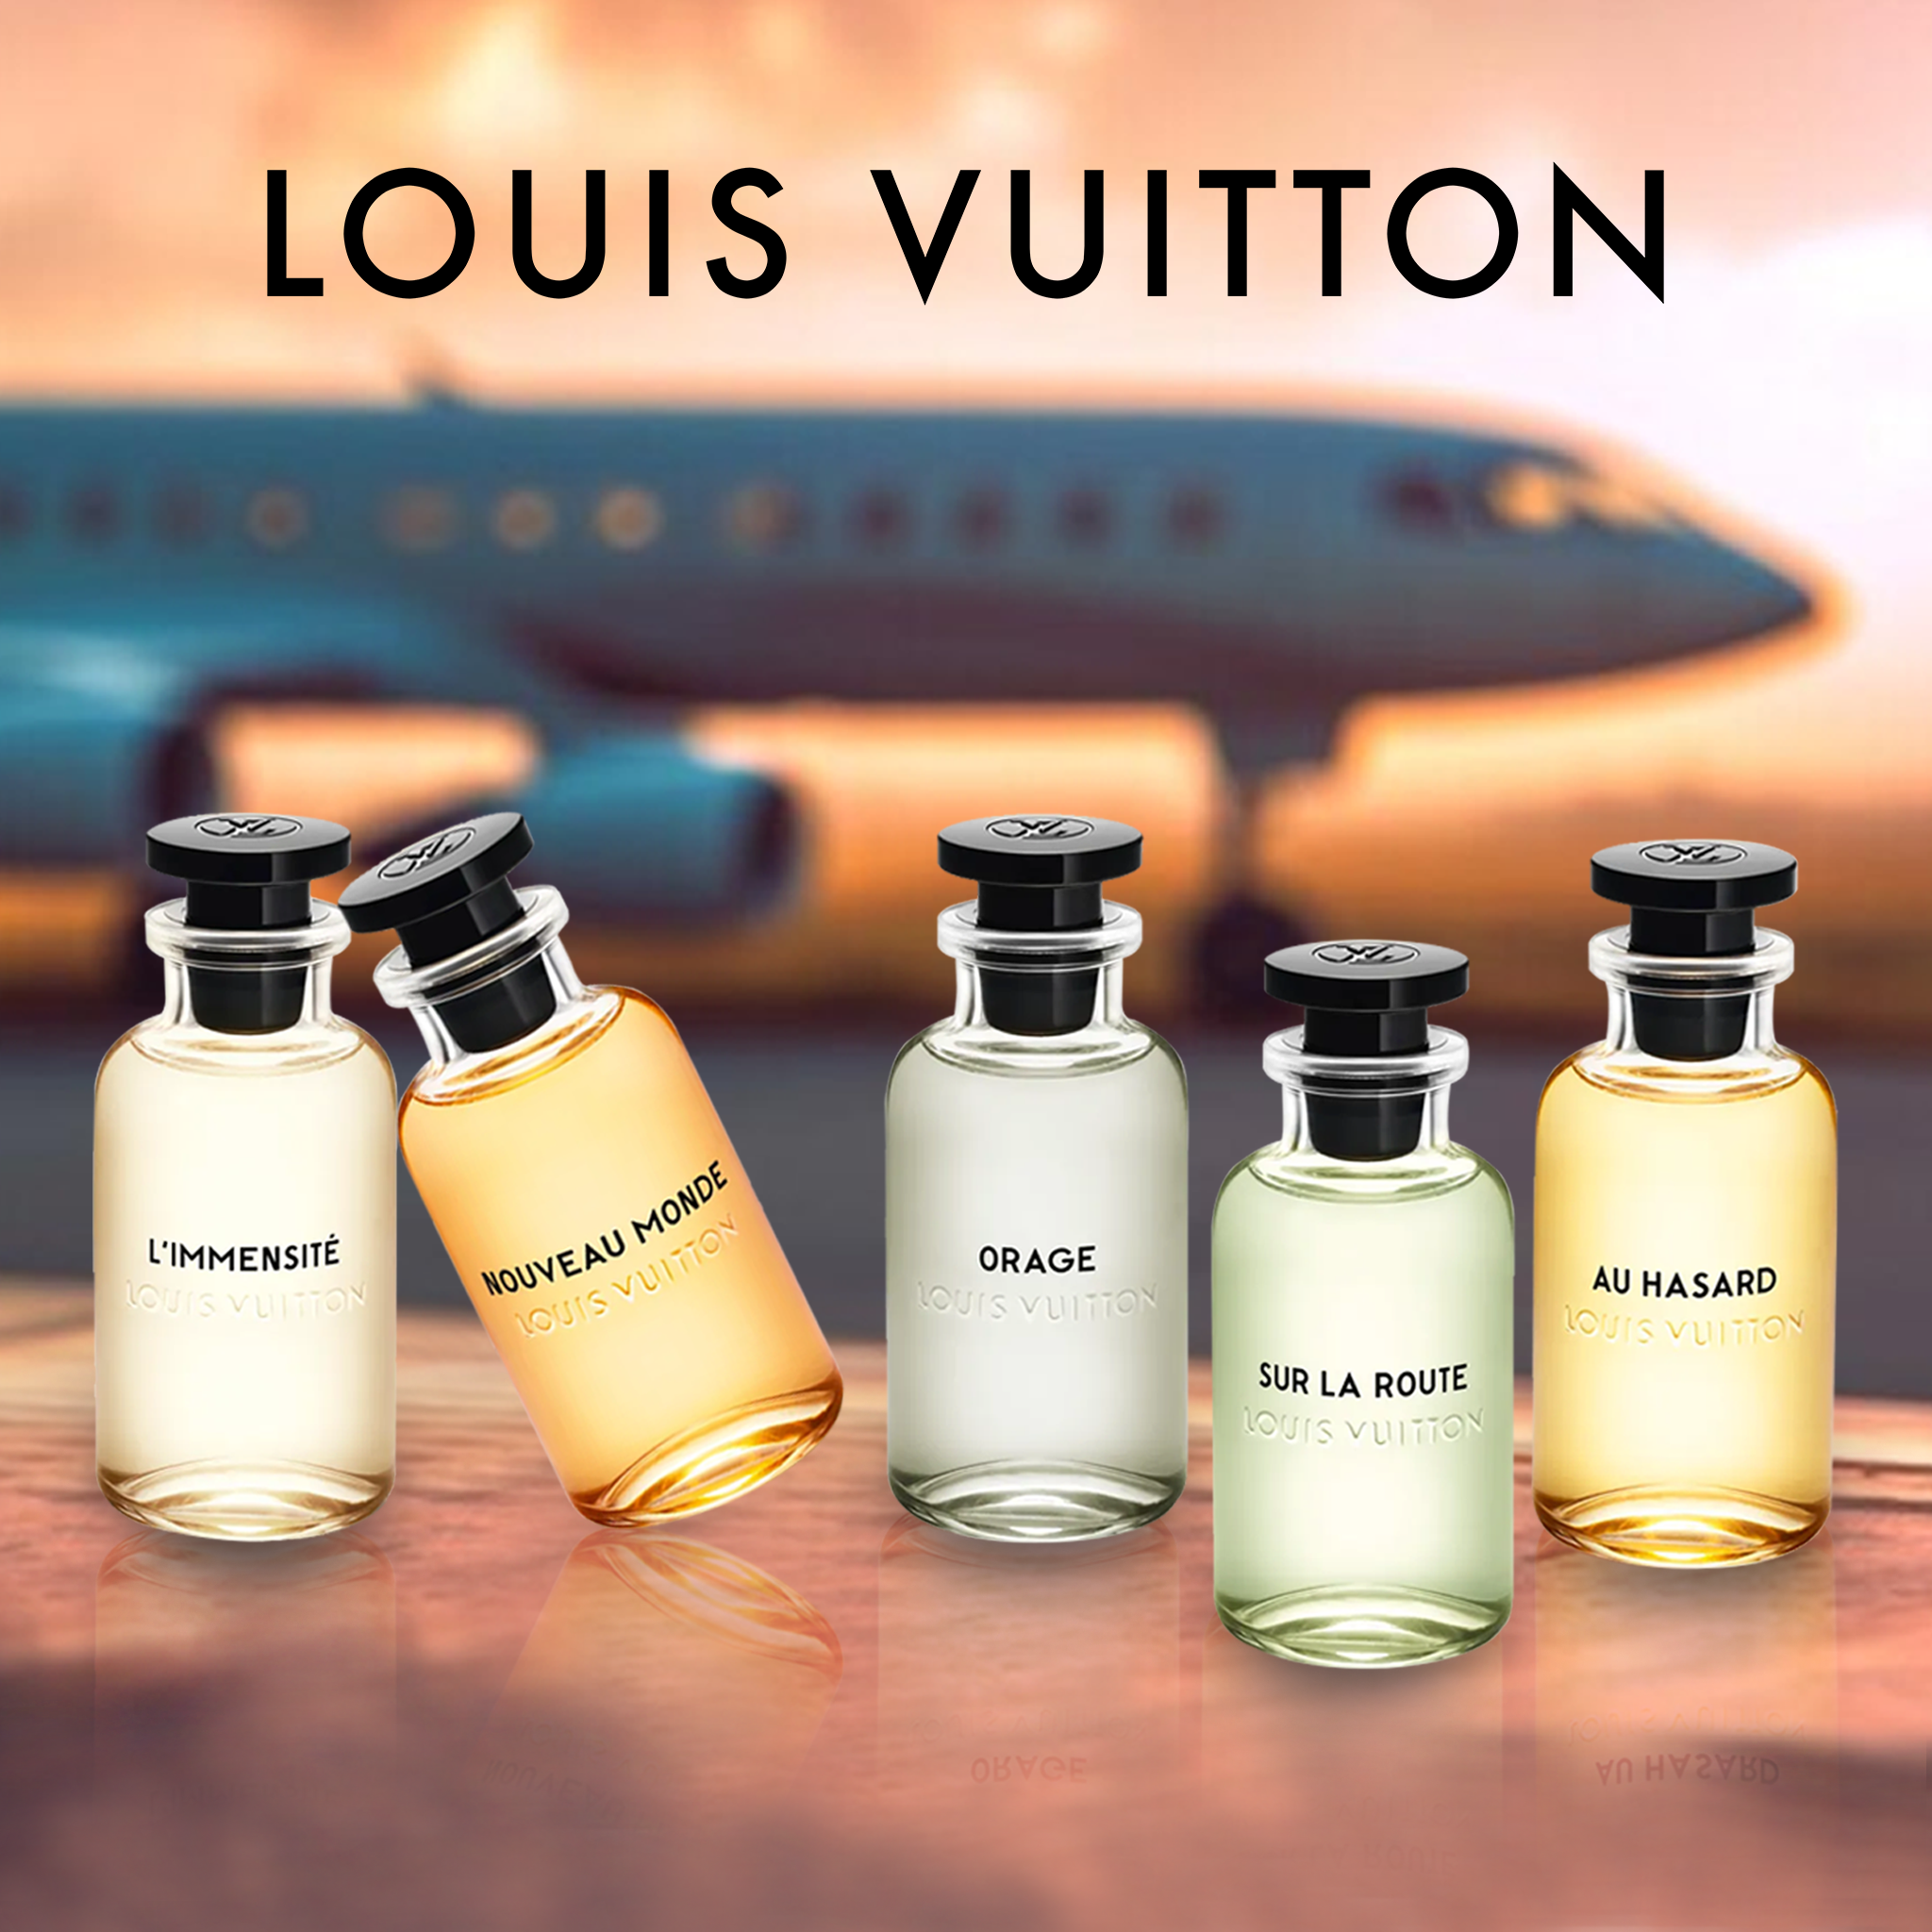 NEW LOUIS VUITTON Mini Spray Perfume Fragrance Au Hasard Travel 2